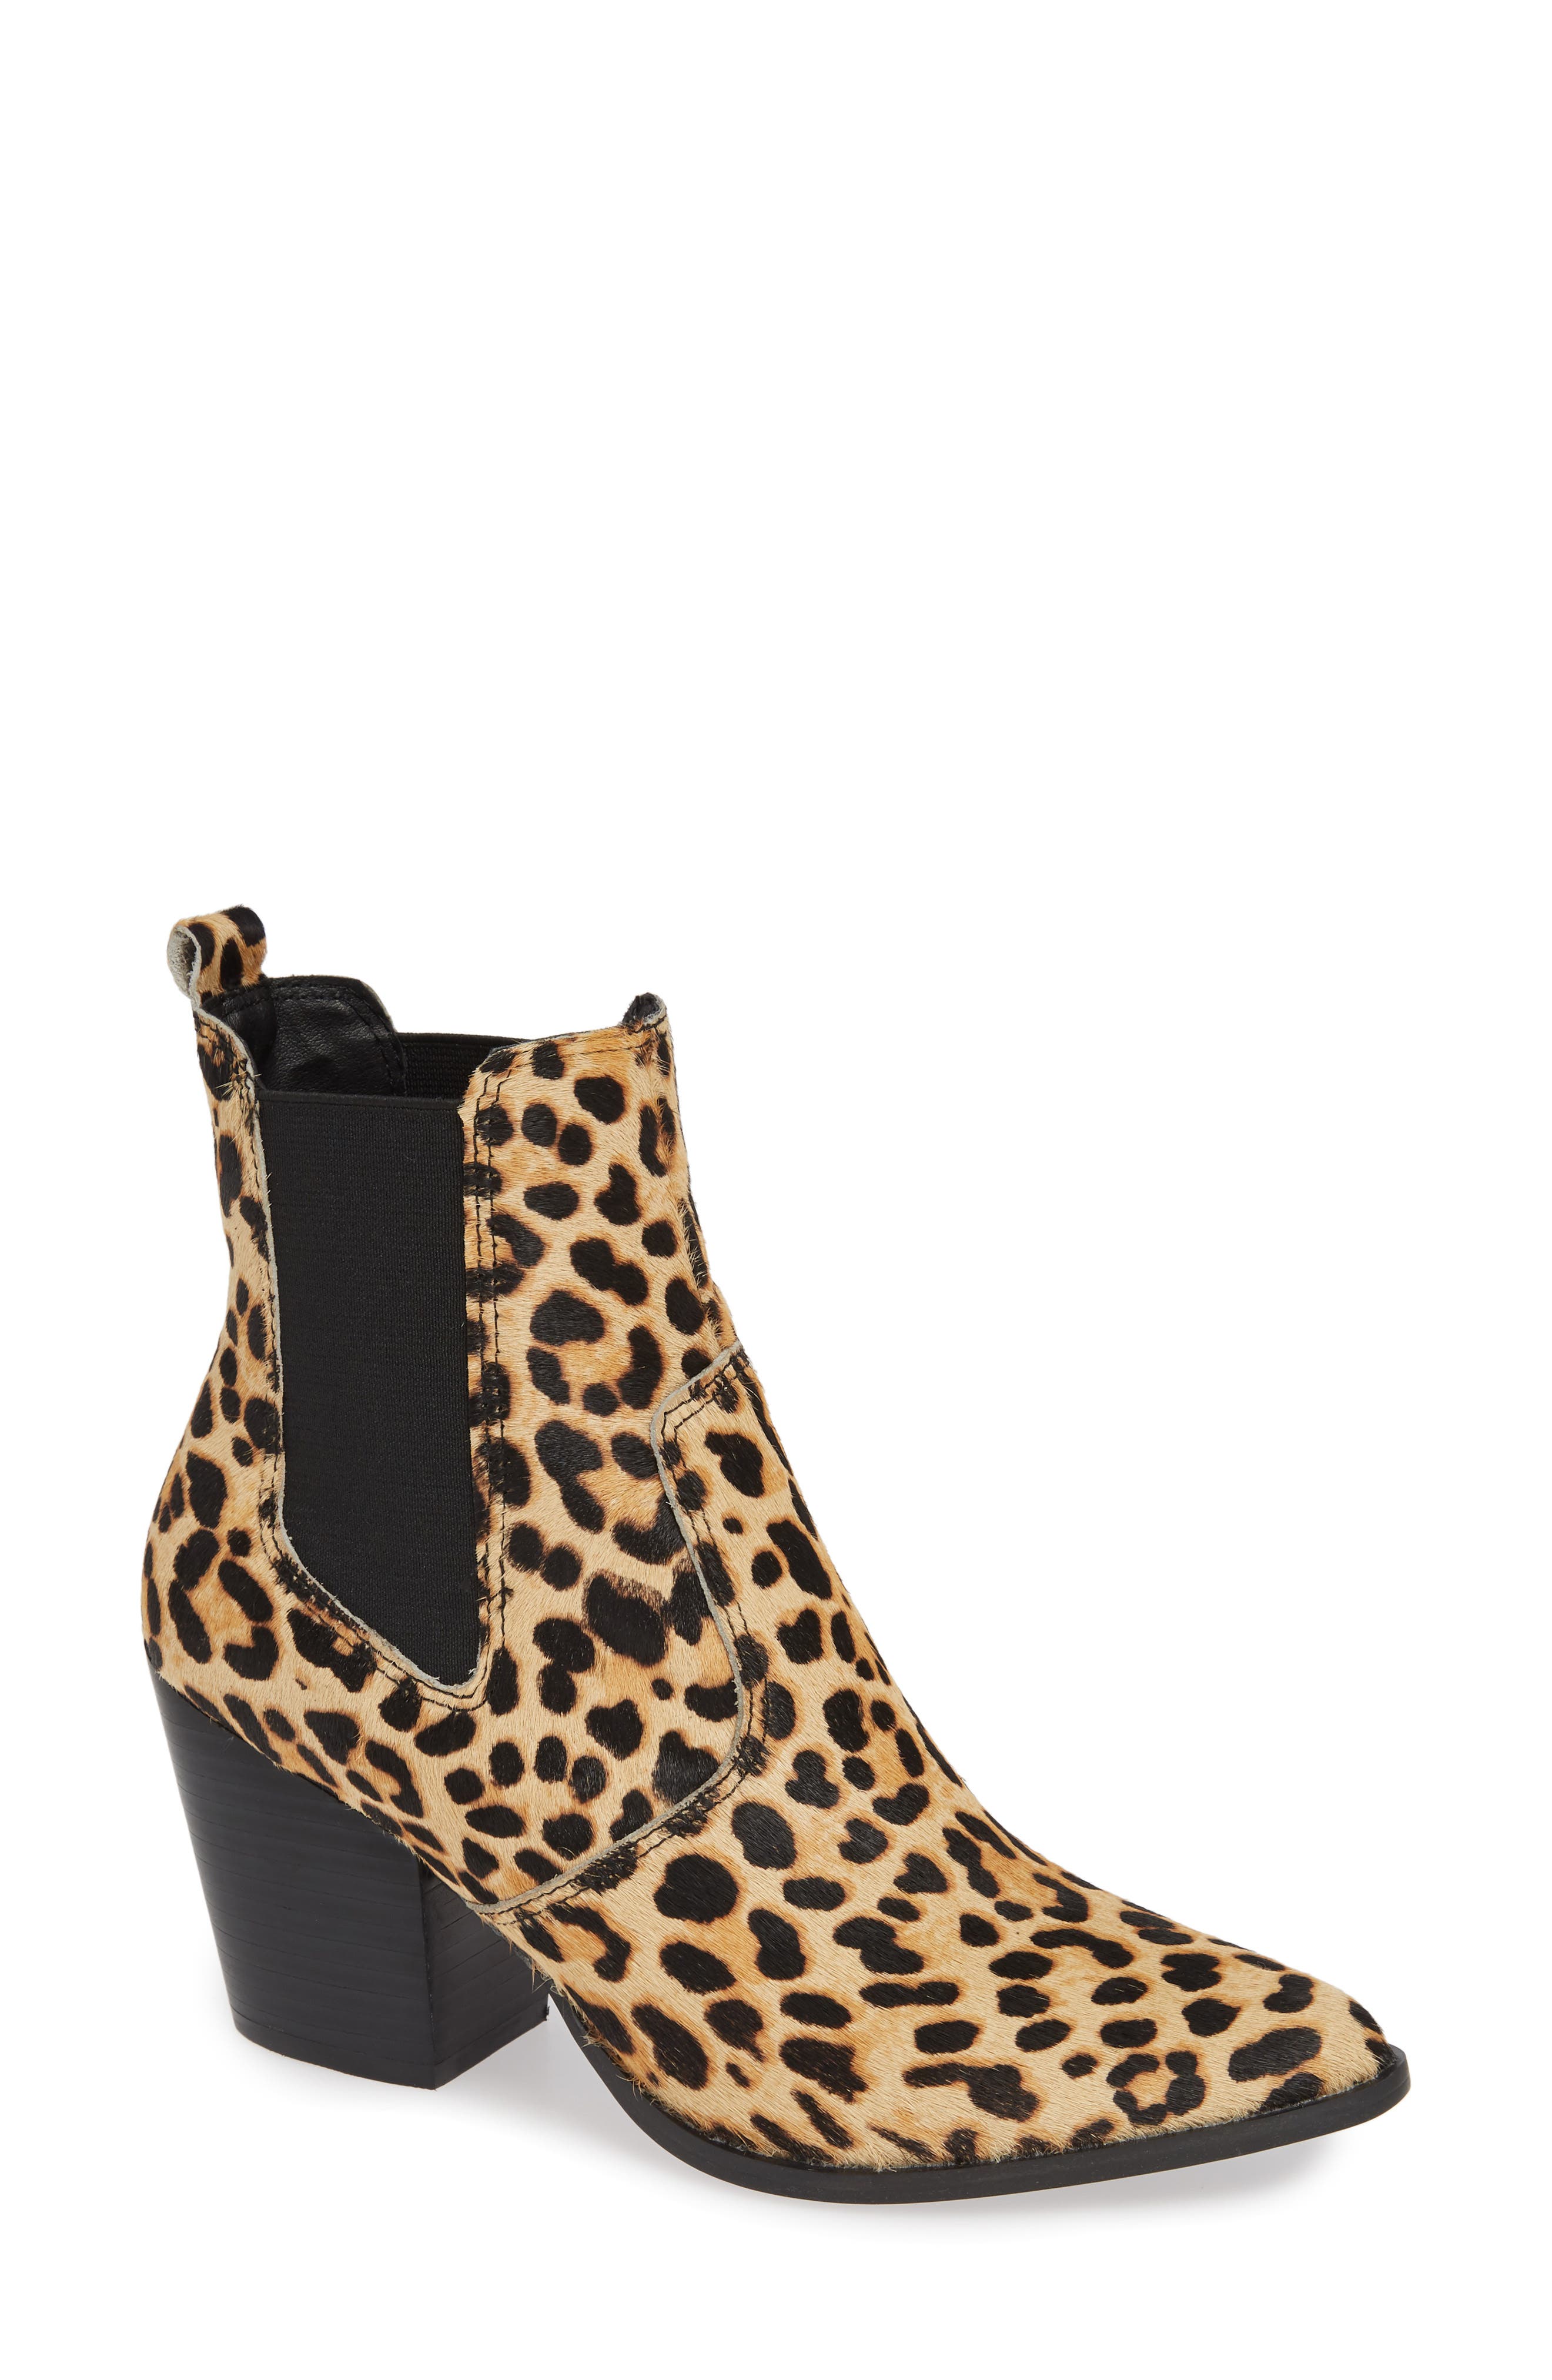 steve madden leopard boots